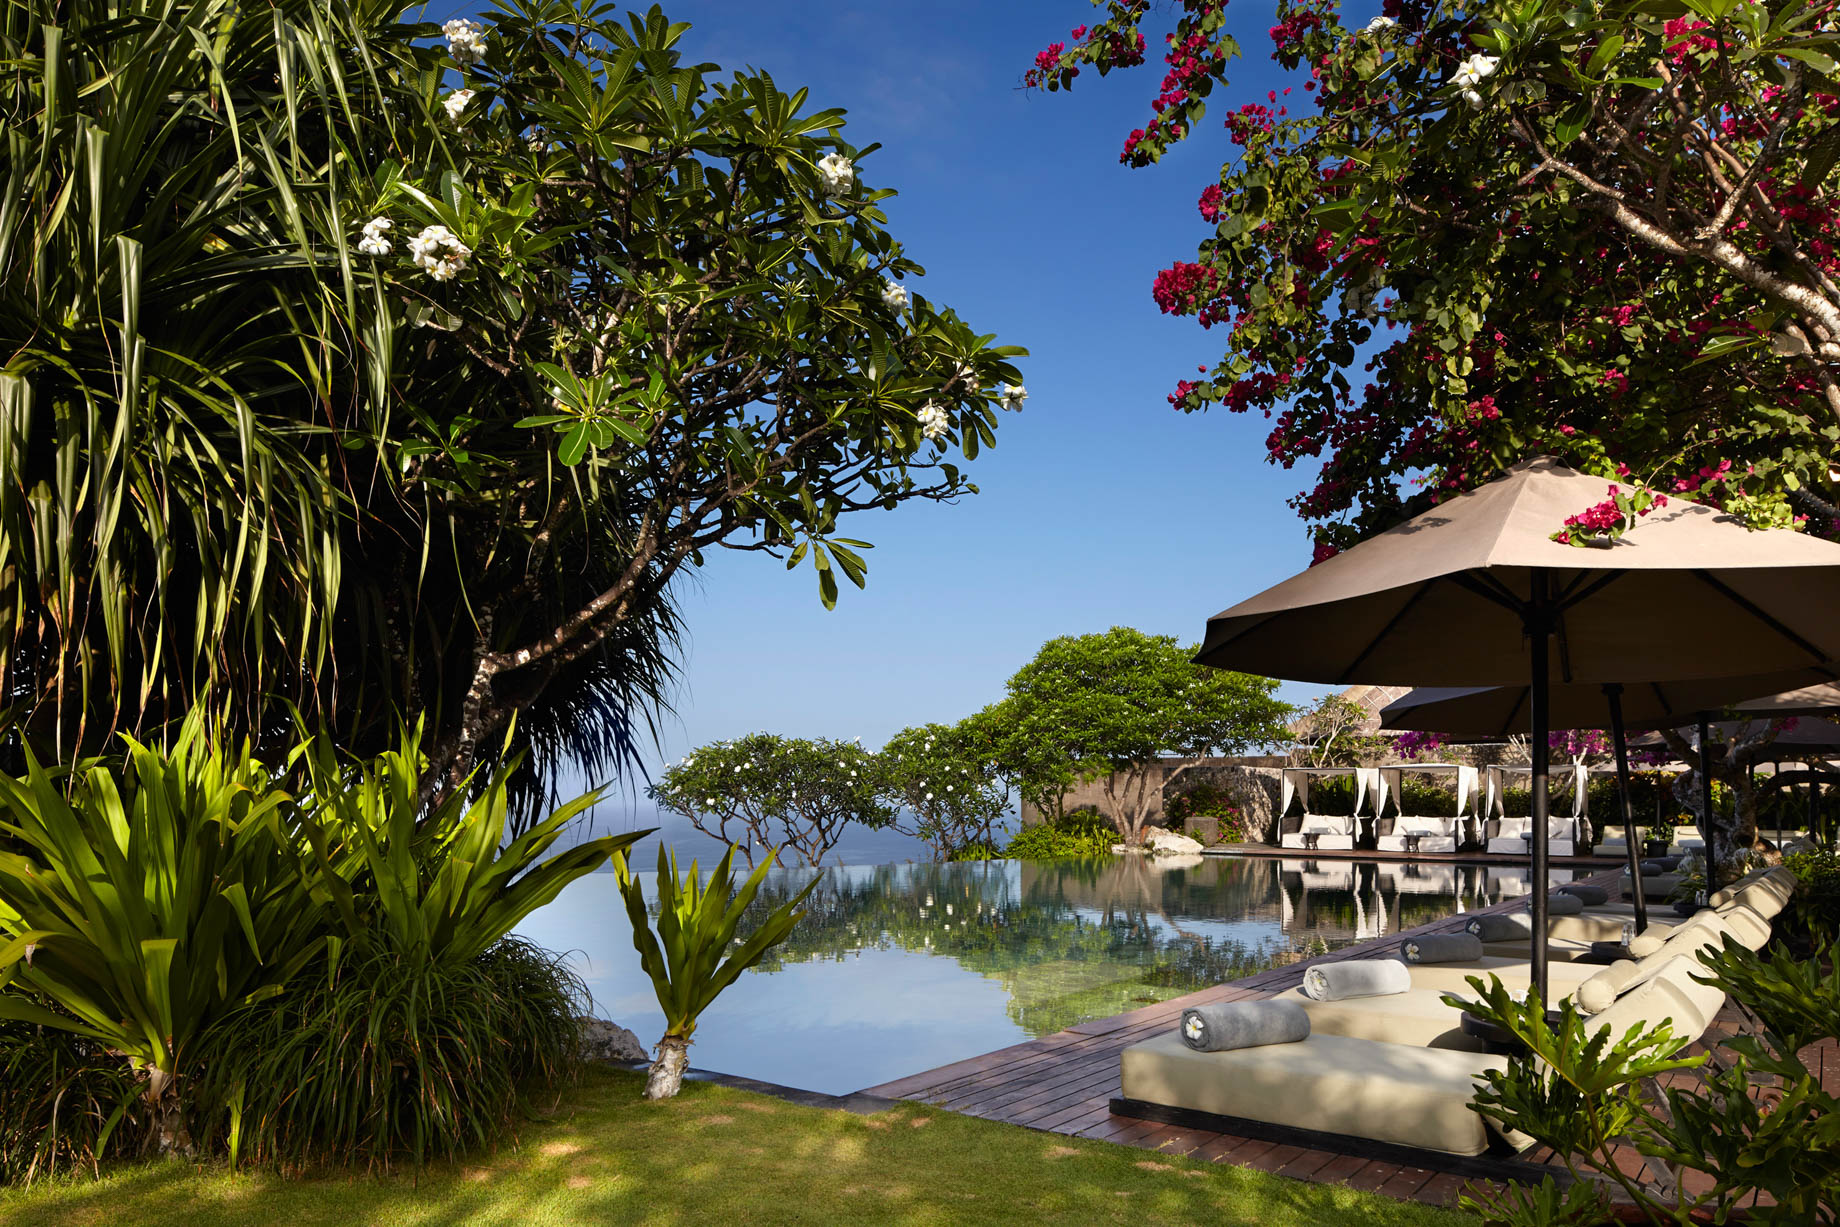 Bvlgari Resort Bali – Uluwatu, Bali, Indonesia – Cliff Side Pool